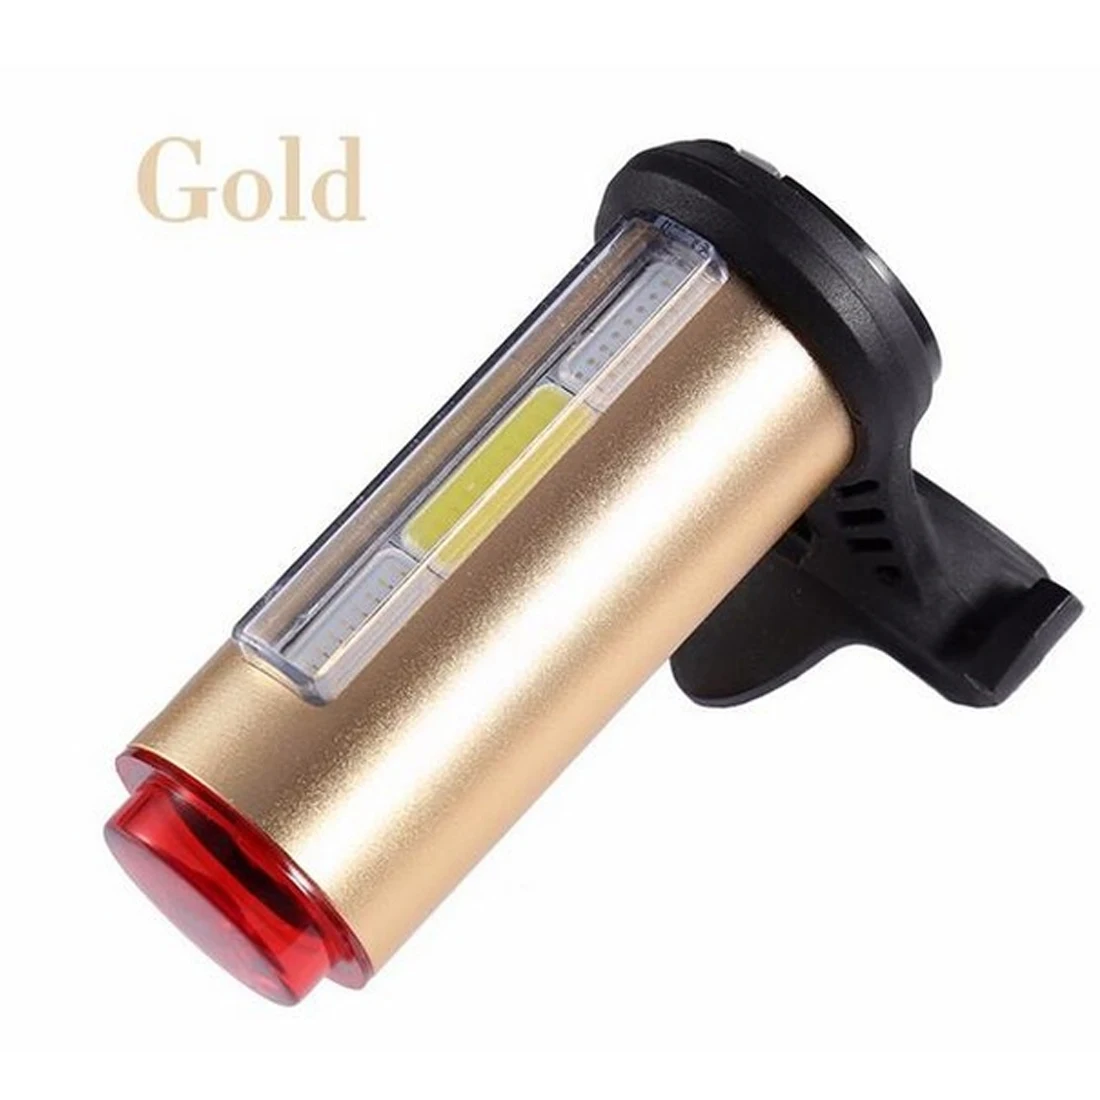 Свет Велоспорт Tail фонарик велосипед USB свет велосипед светодиодный 360 градусов лазерной аксессуары сигнальная лампа землю лампы - Цвет: Gold